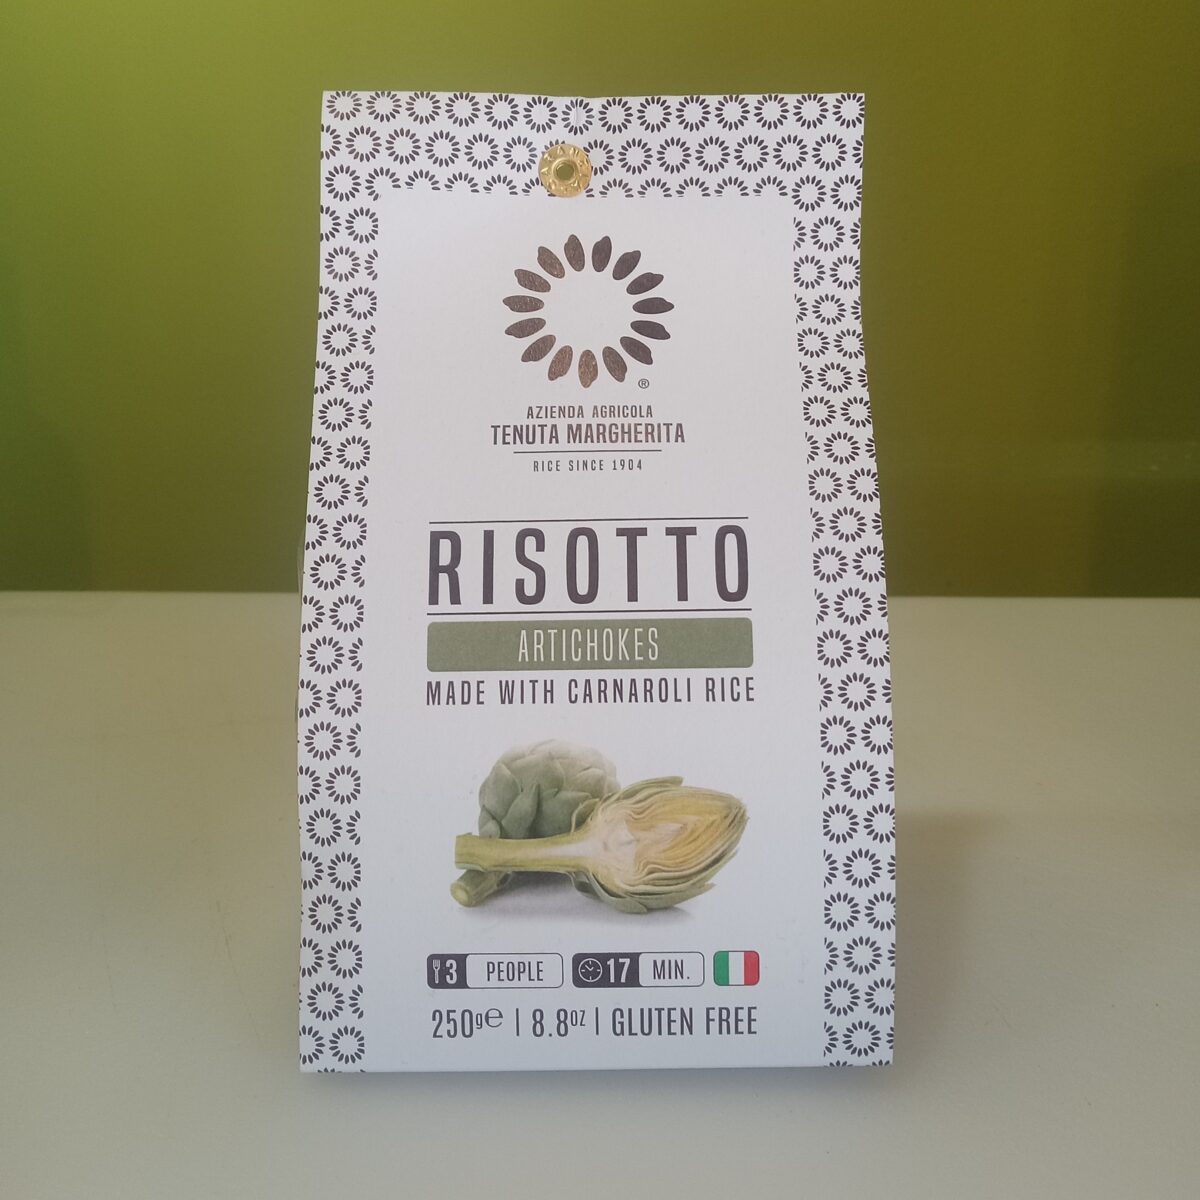 Risotto - Artichoke - Italy